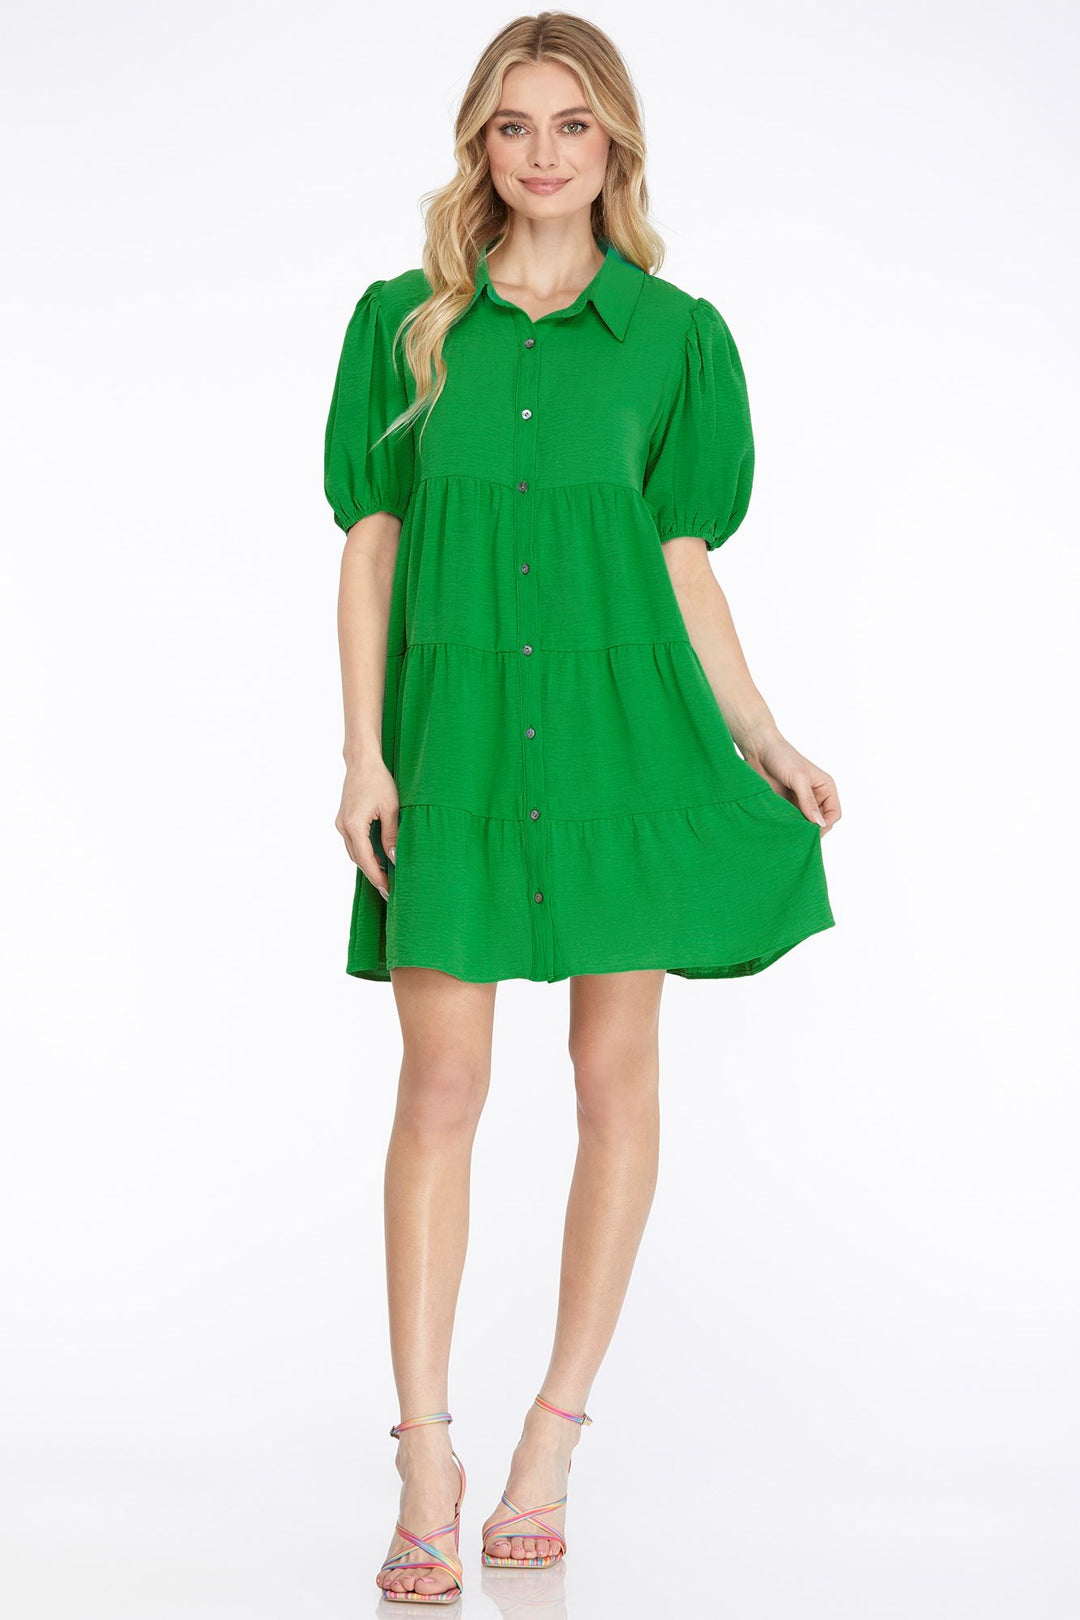 Flirt For Fun Green Dress